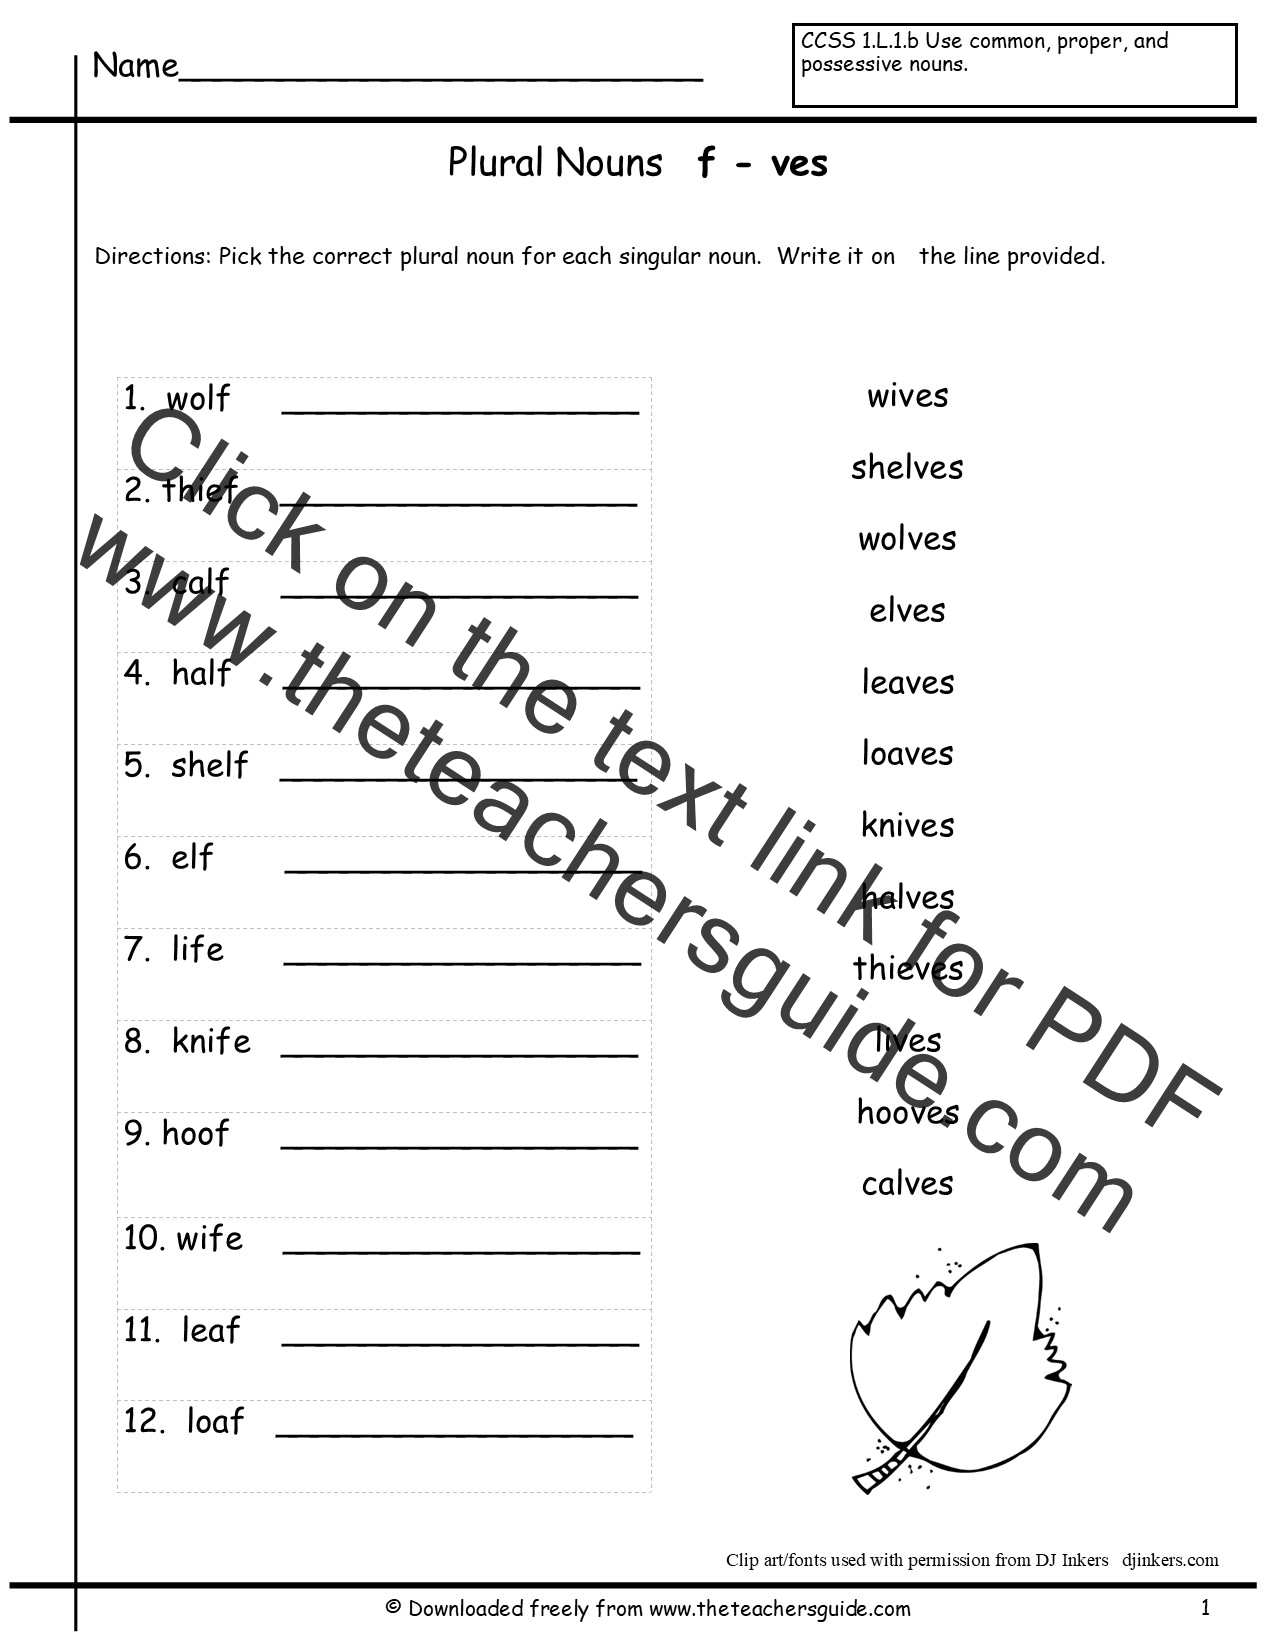 plurals-s-es-ies-worksheet-by-teach-simple